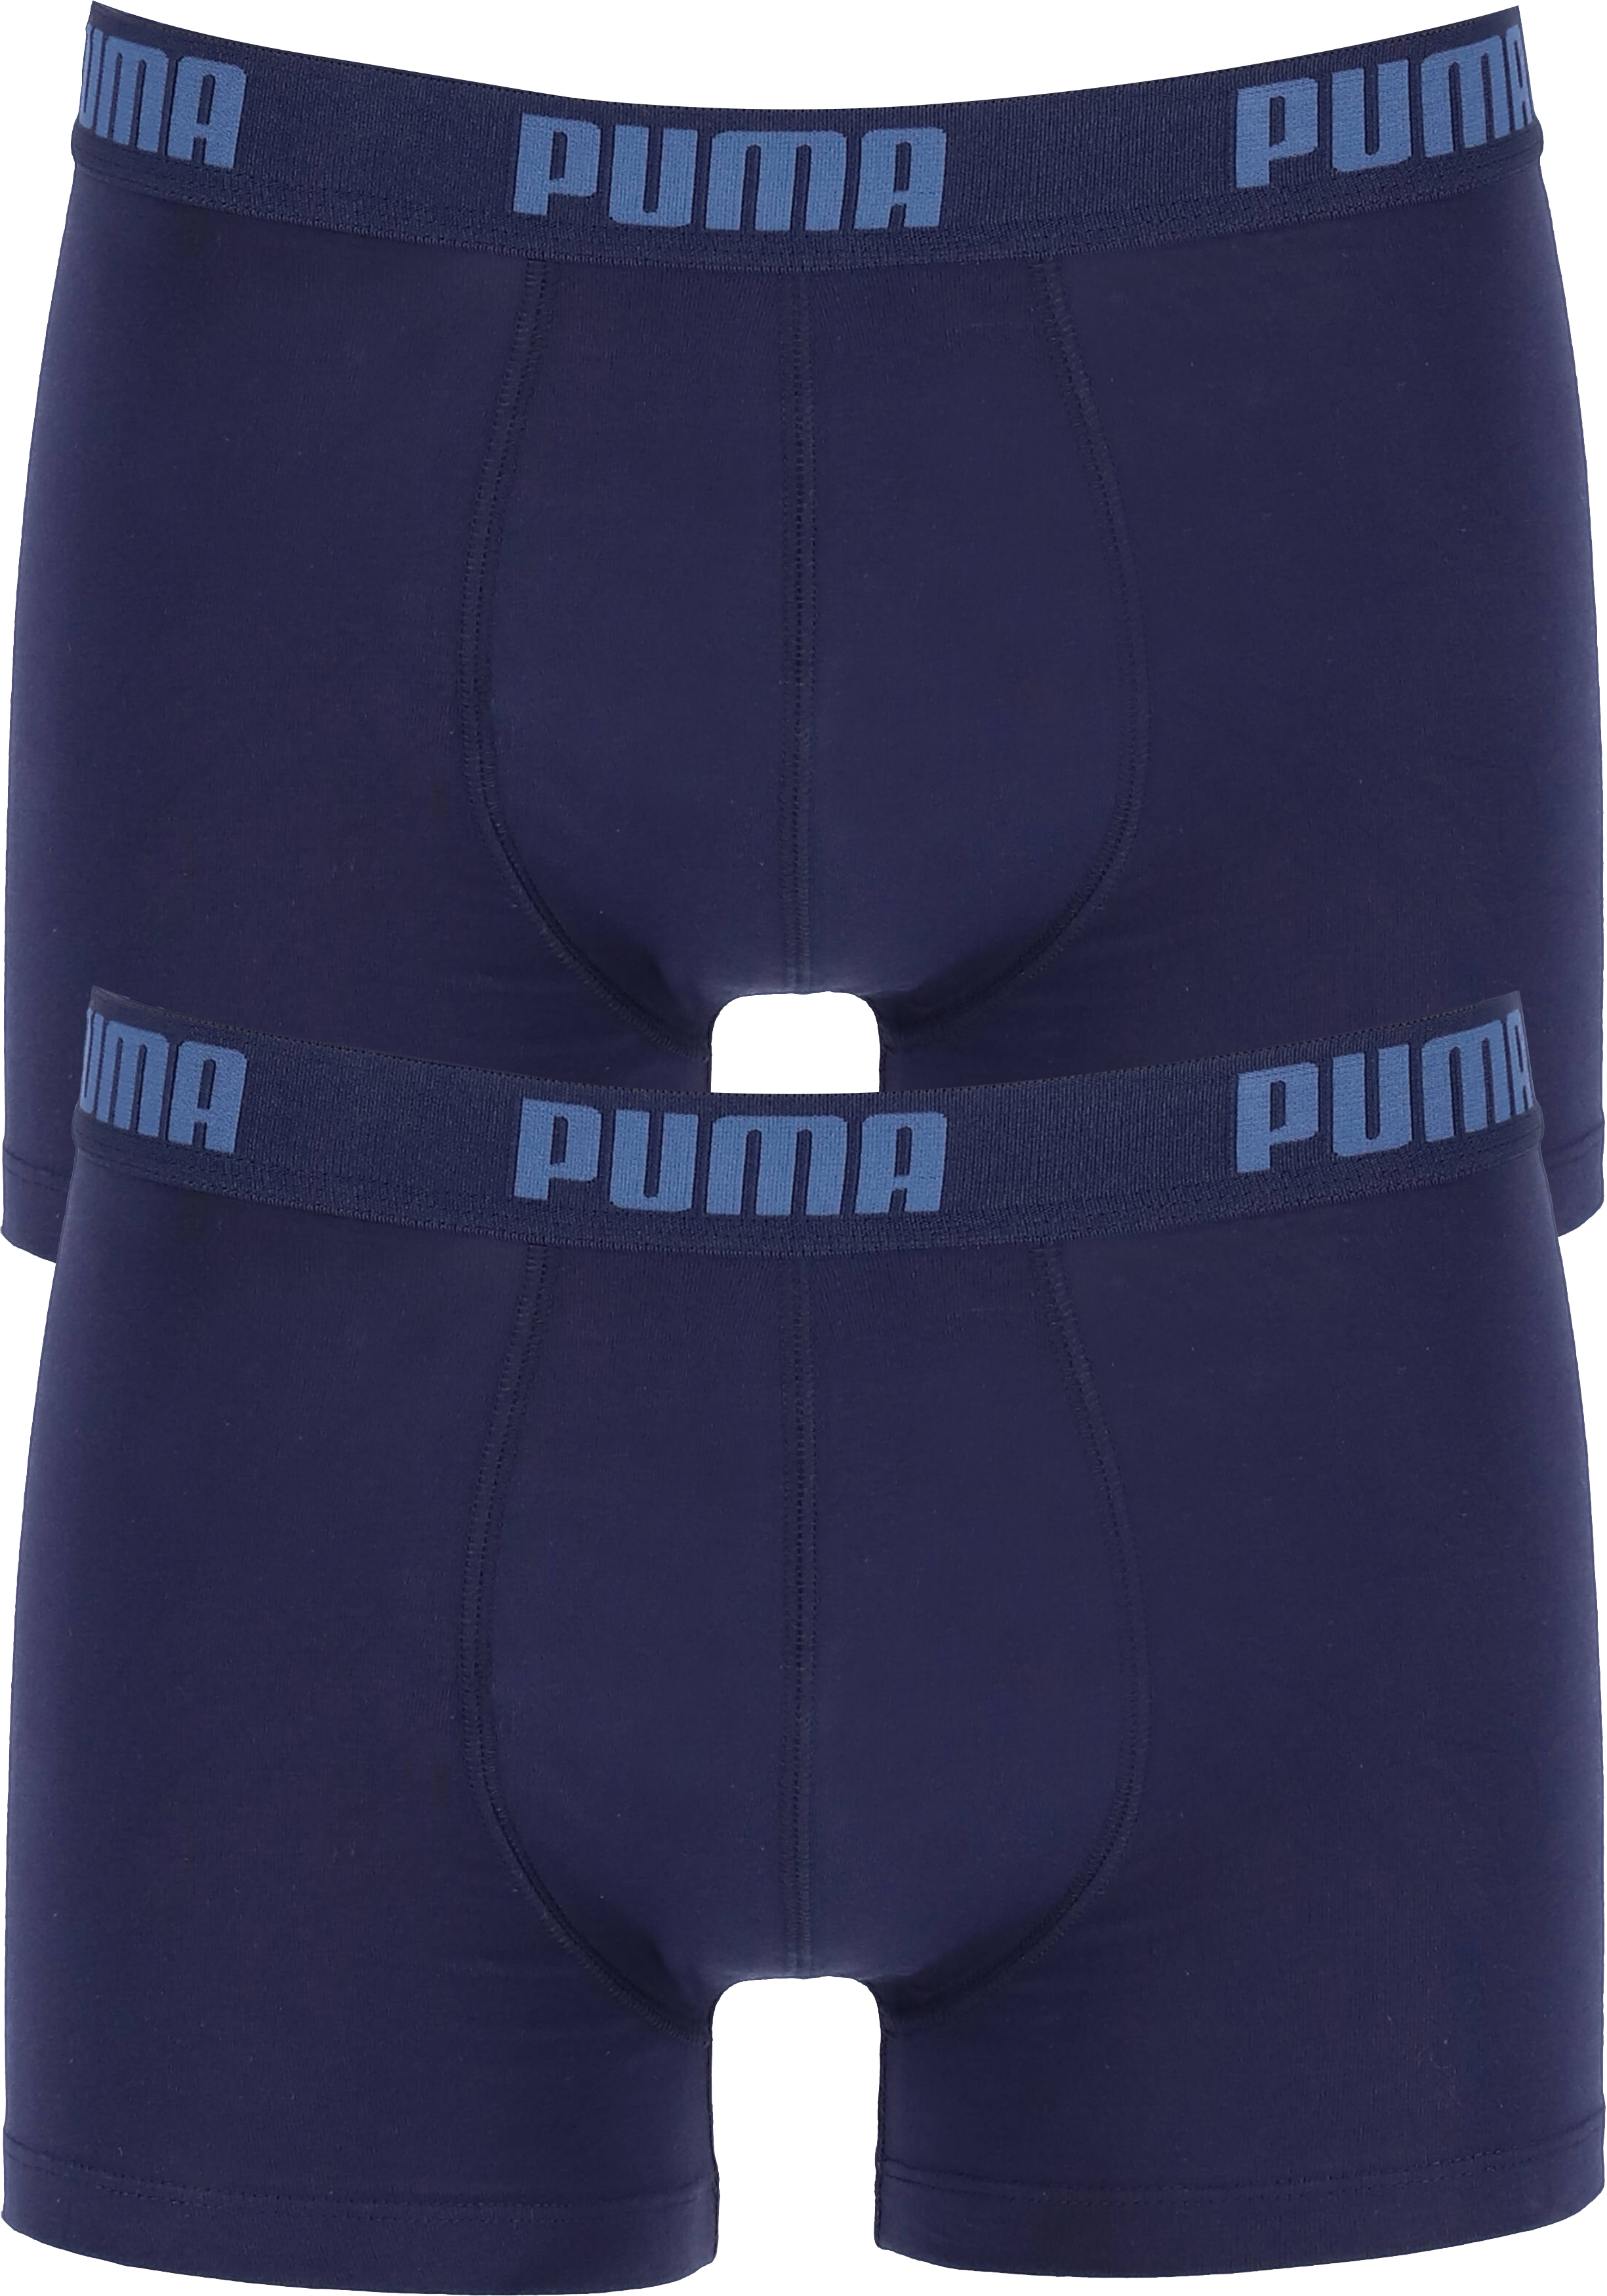 Puma Basic Boxer heren (2-pack), navy blauw